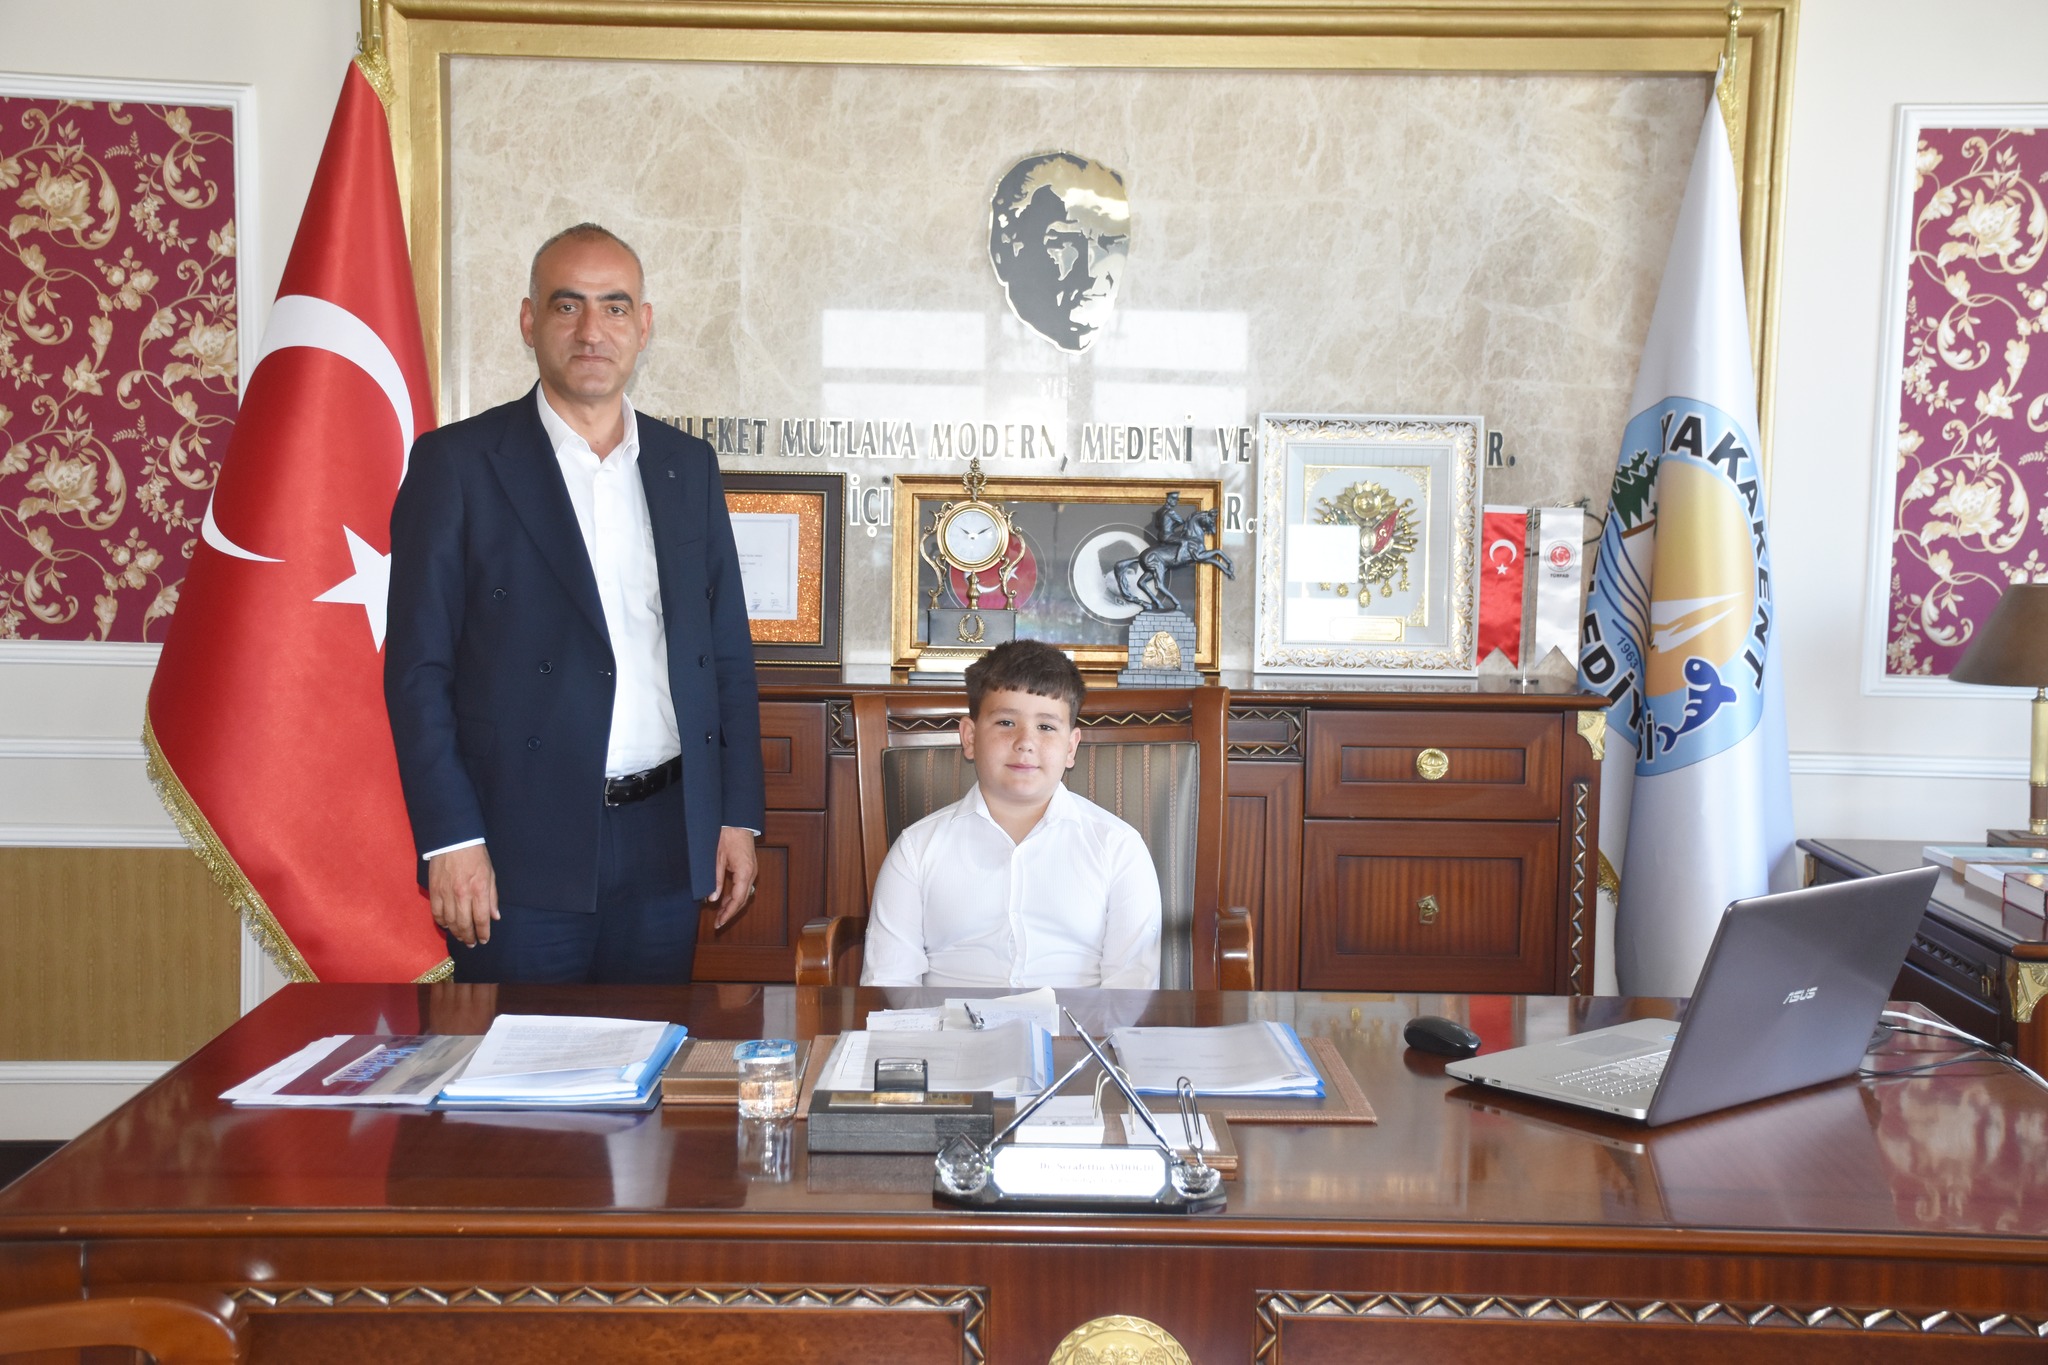 23 Nisan Ulusal Egemenlik ve Çocuk Bayramı kapsamında Belediye Başkanımız Dr. Şerafettin Aydoğdu, Erdoğan Cebeci İlkokulu 4. sınıf öğrencisi Utku Albayrak’a koltuğu devretti.